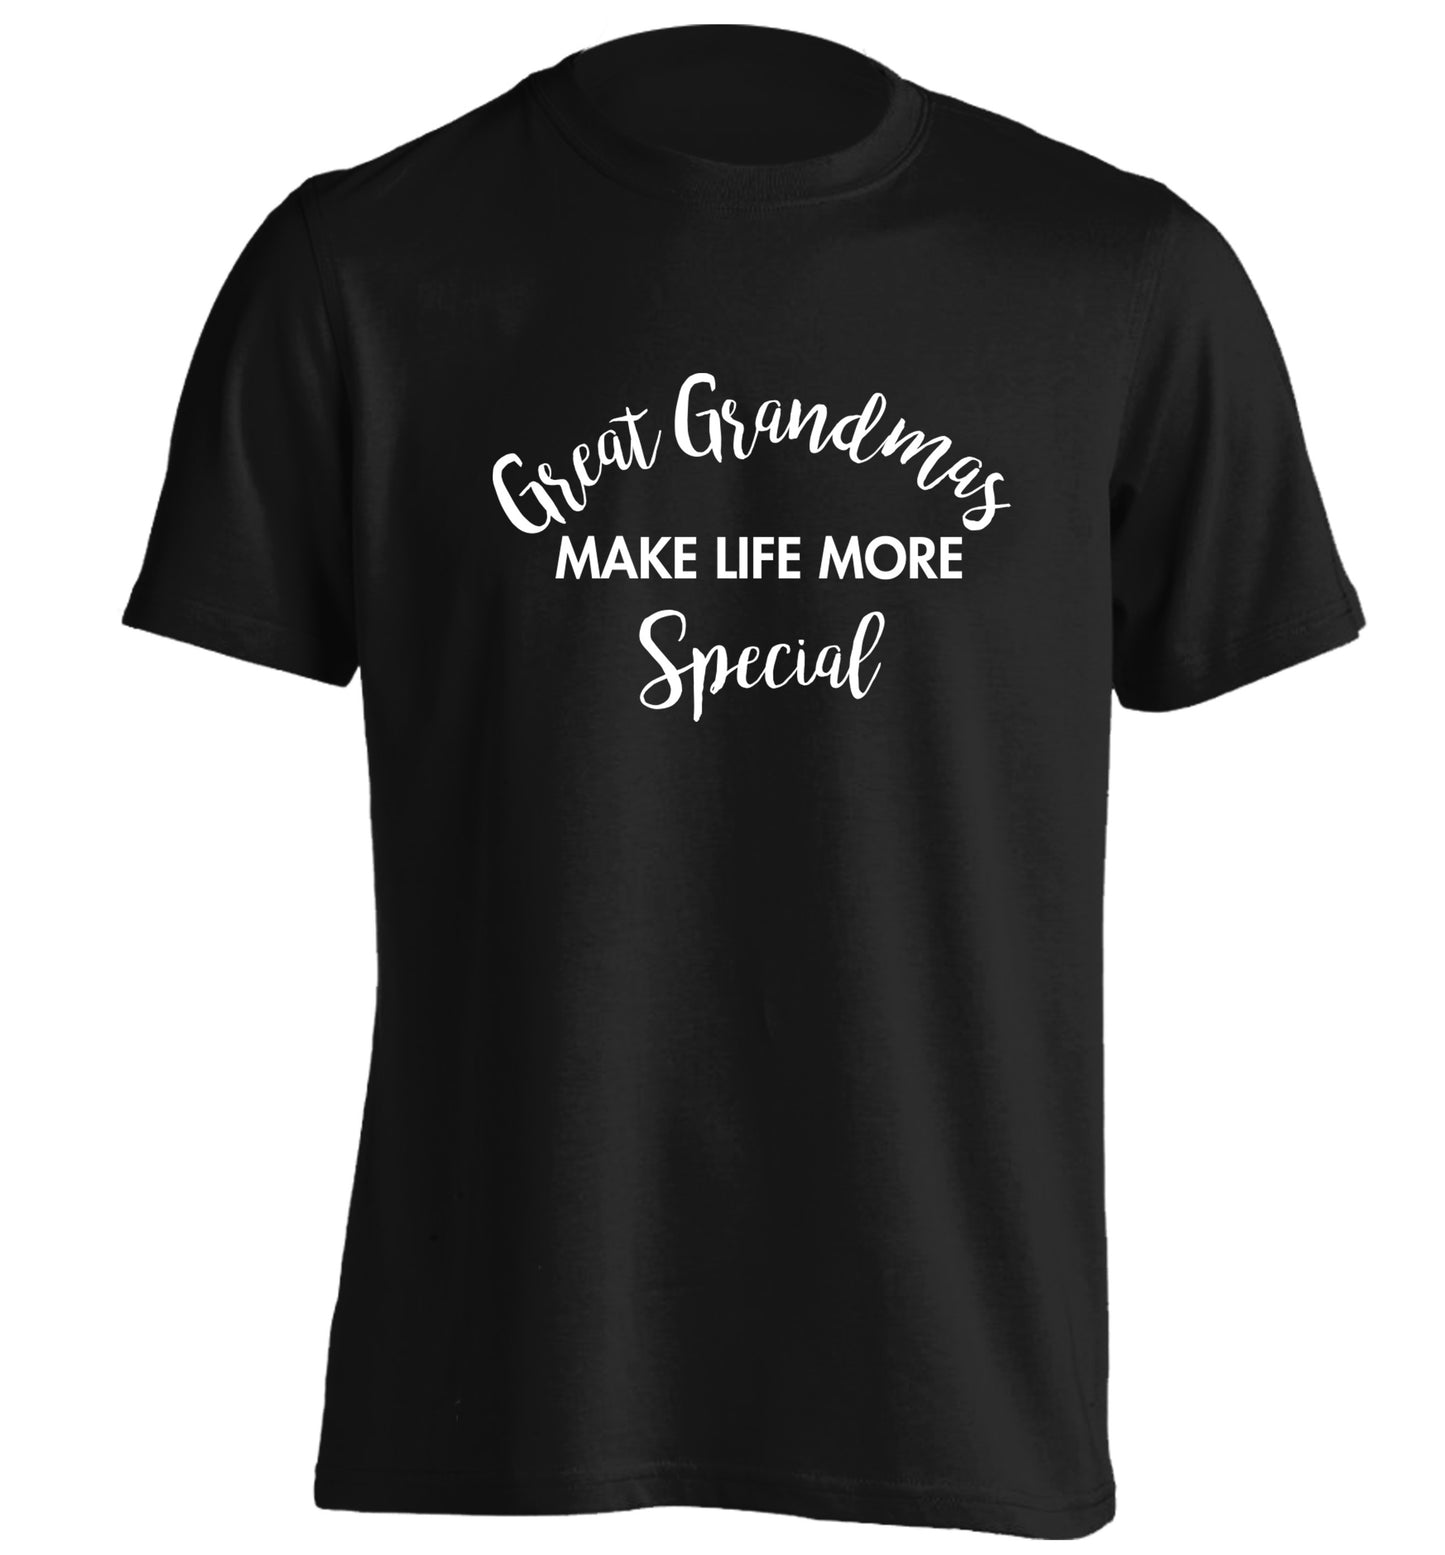 Great Grandmas make life more special adults unisex black Tshirt 2XL